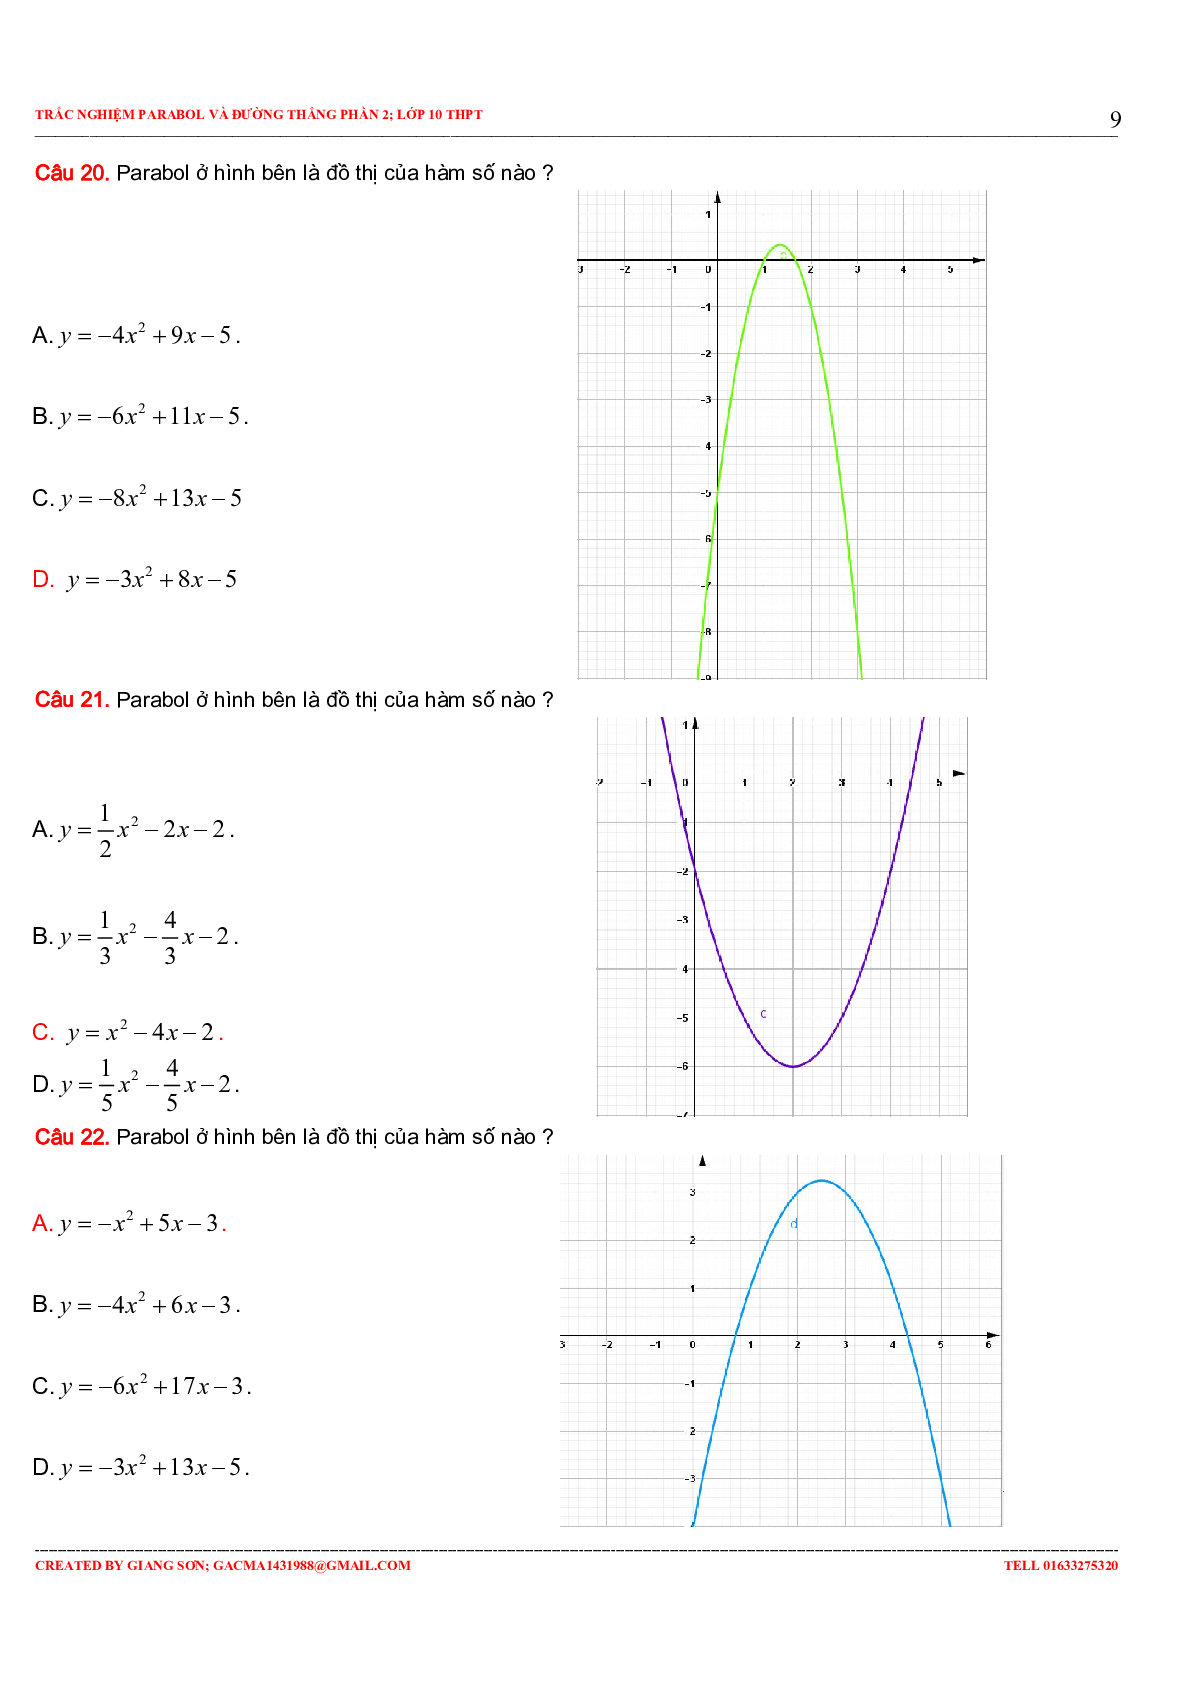 97 Bài tập trắc nghiệm Parabol và đường thẳng phần 2 (trang 9)